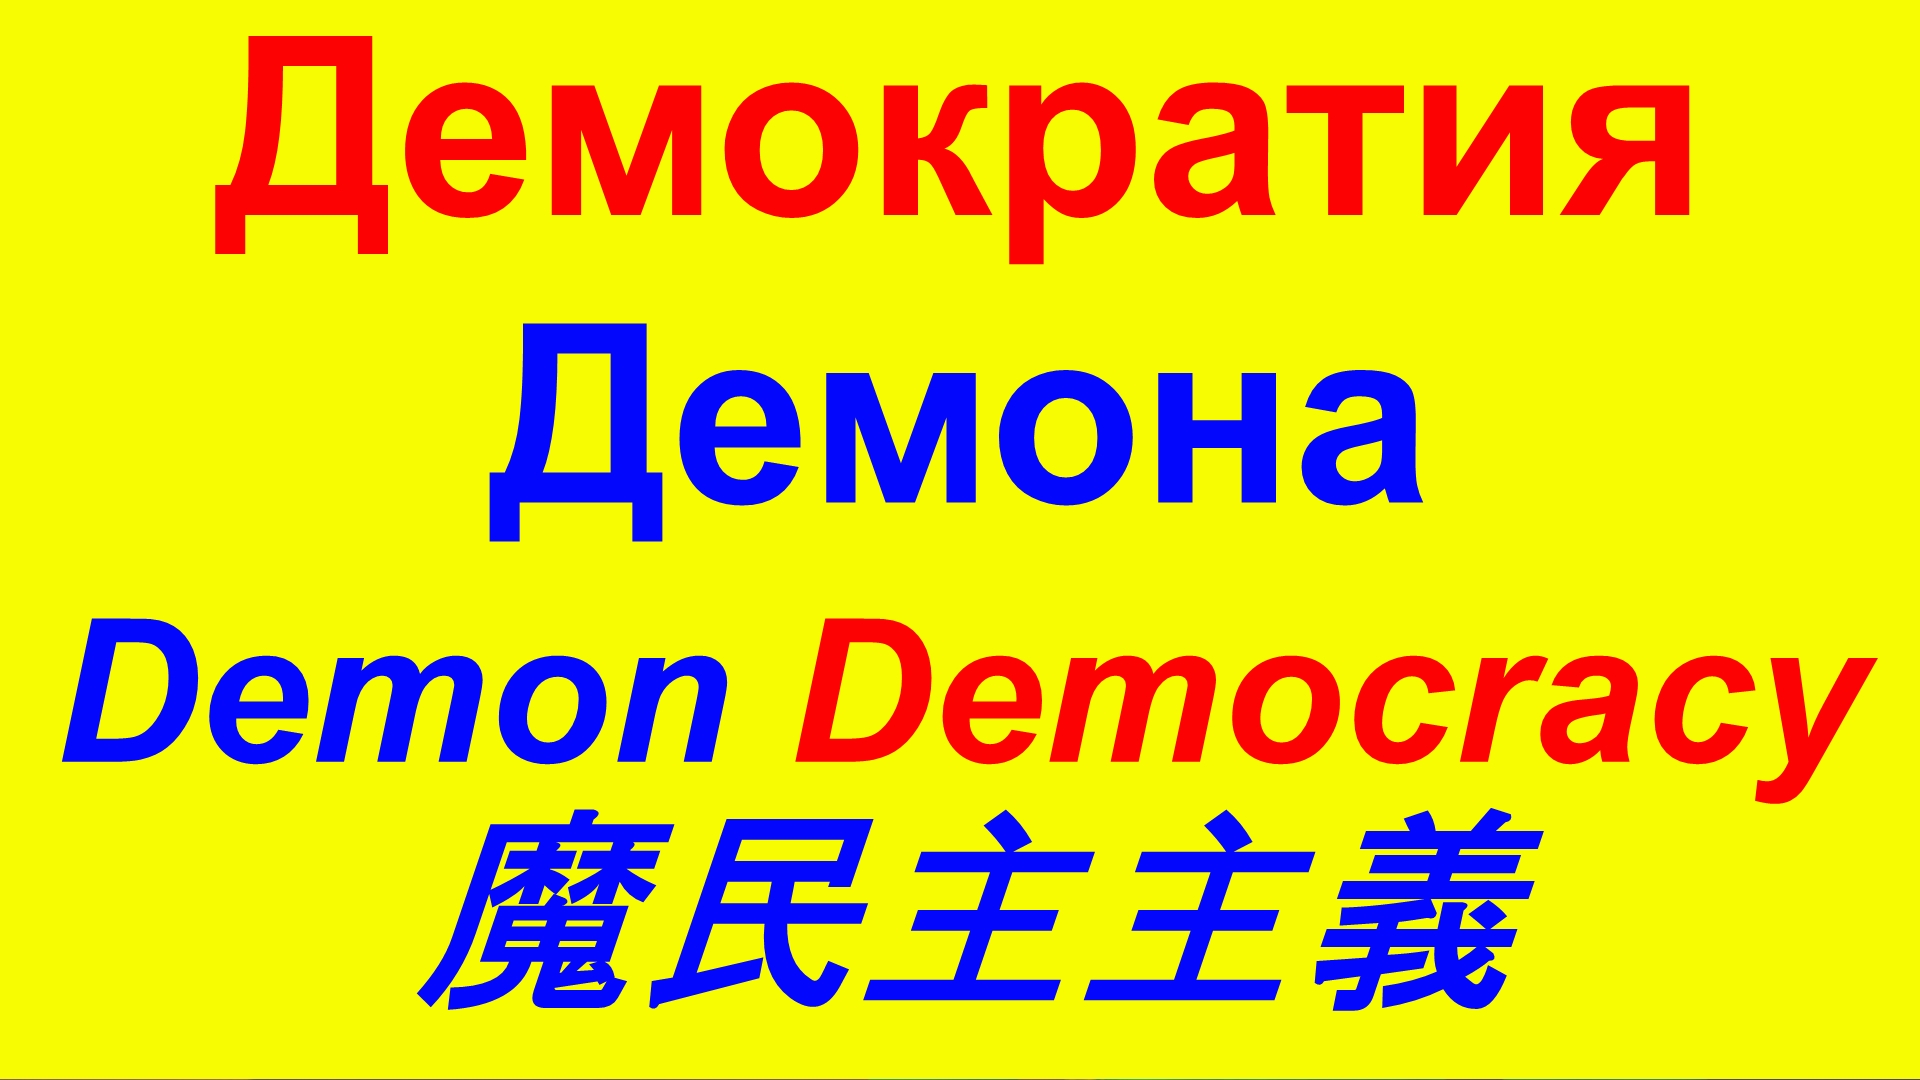 Неправильная демократия 誤民主主義 Wrong democracy USA США Газа Украина